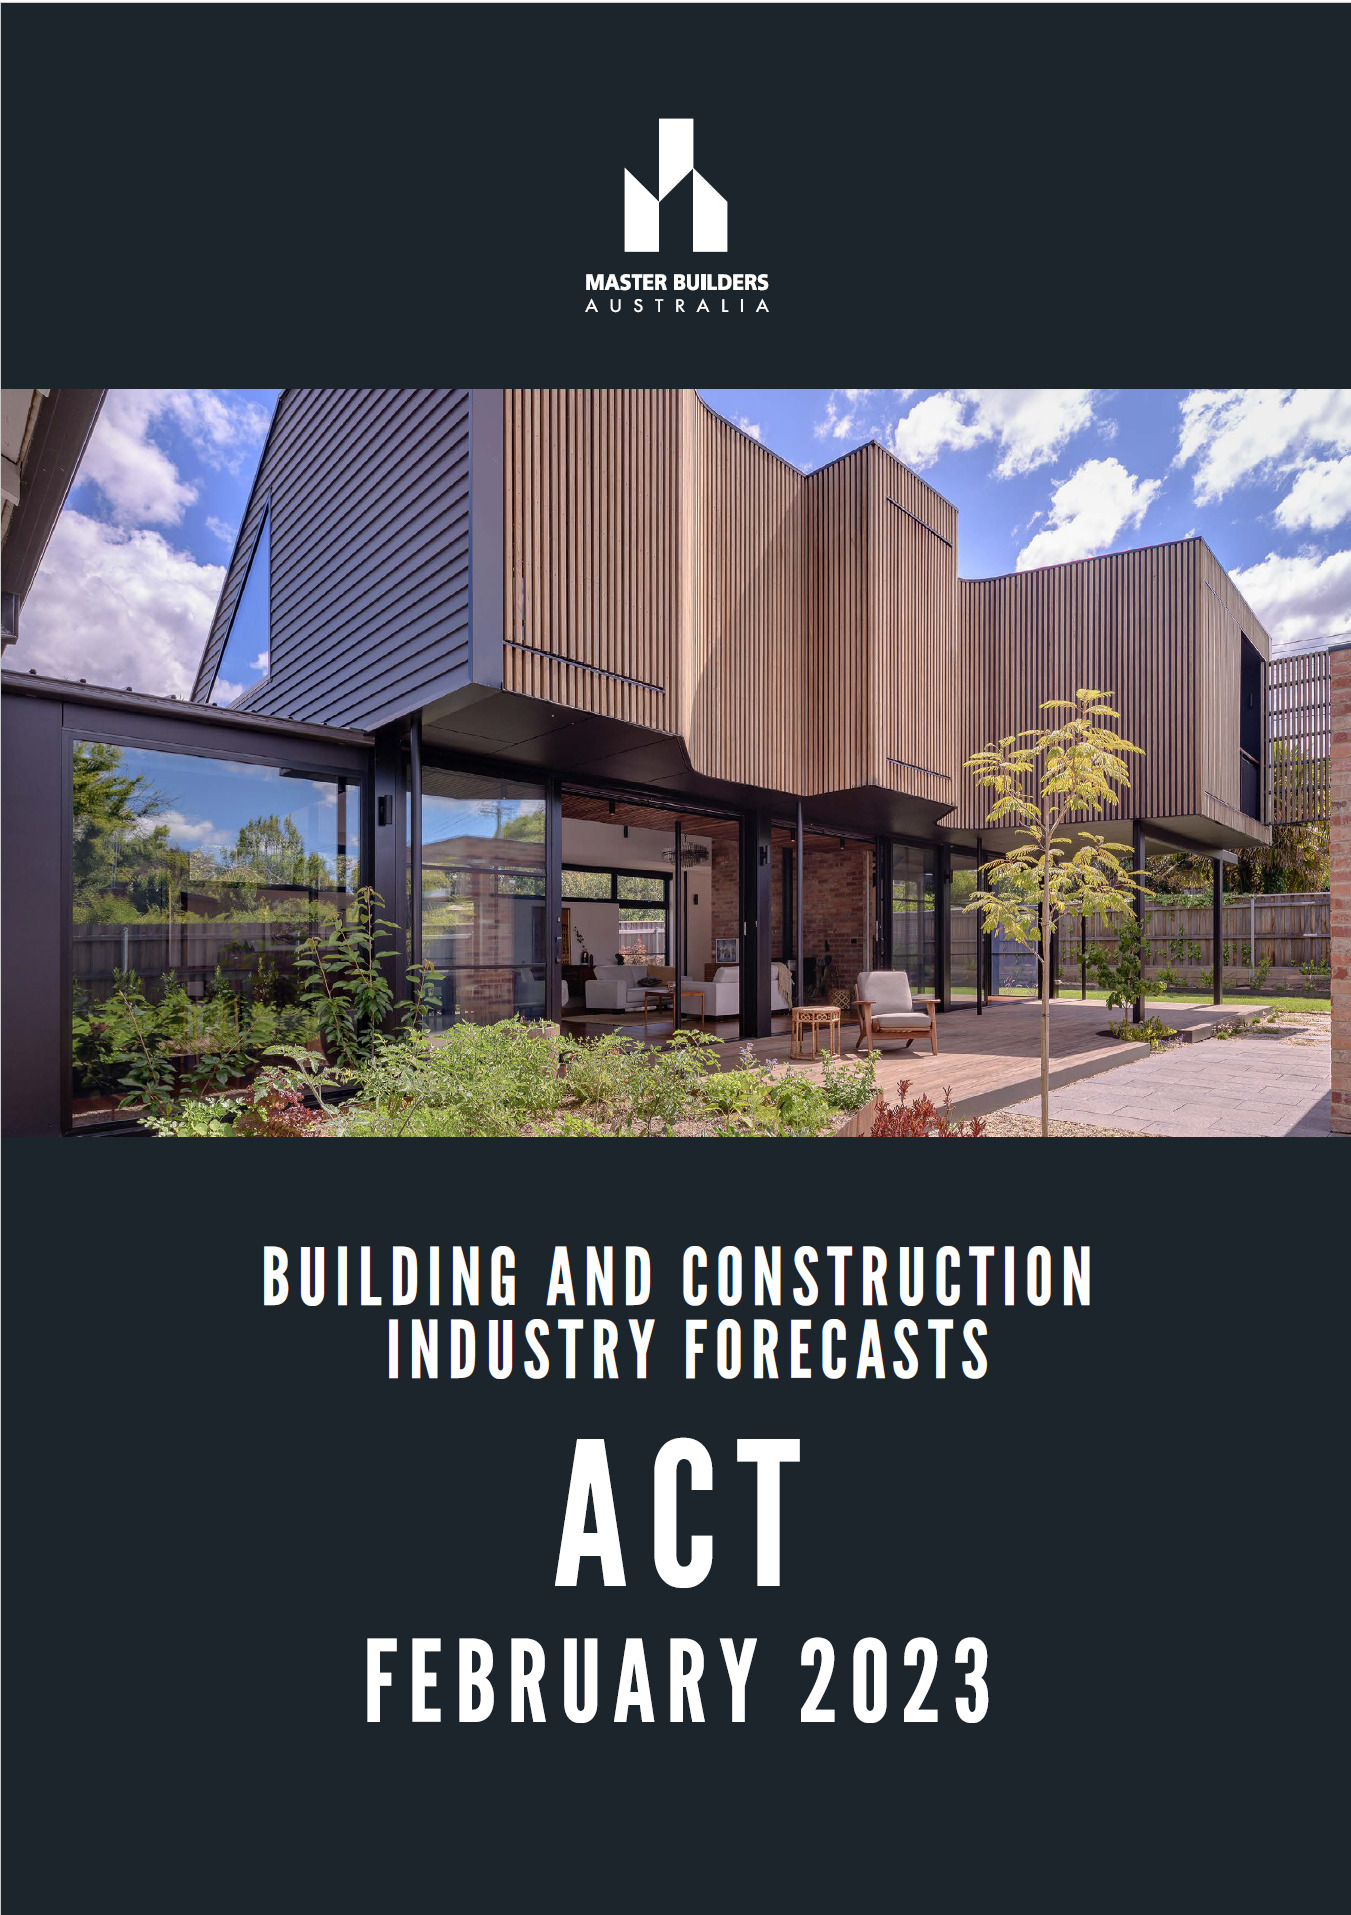 ACT Forecast February 2023